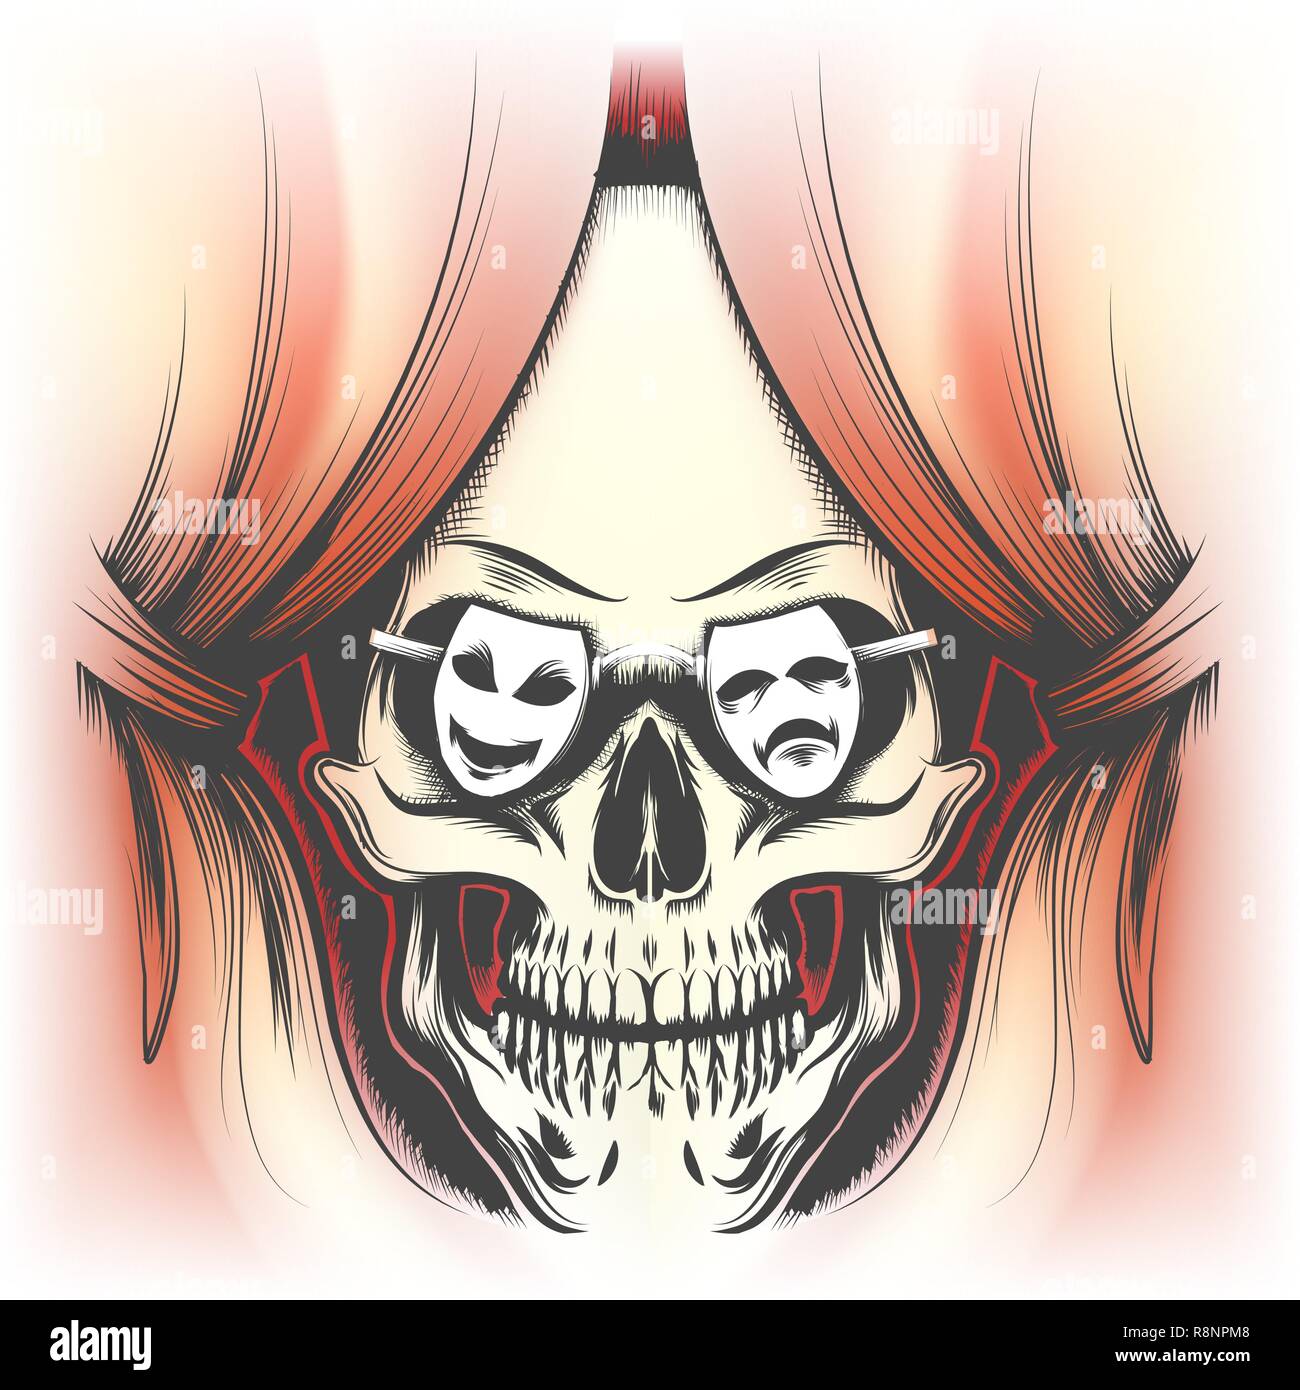 Rideau rouge et crâne humain dans des verres en forme de masques de théâtre dessiné dans le style de tatouage. Vector illustration. Illustration de Vecteur